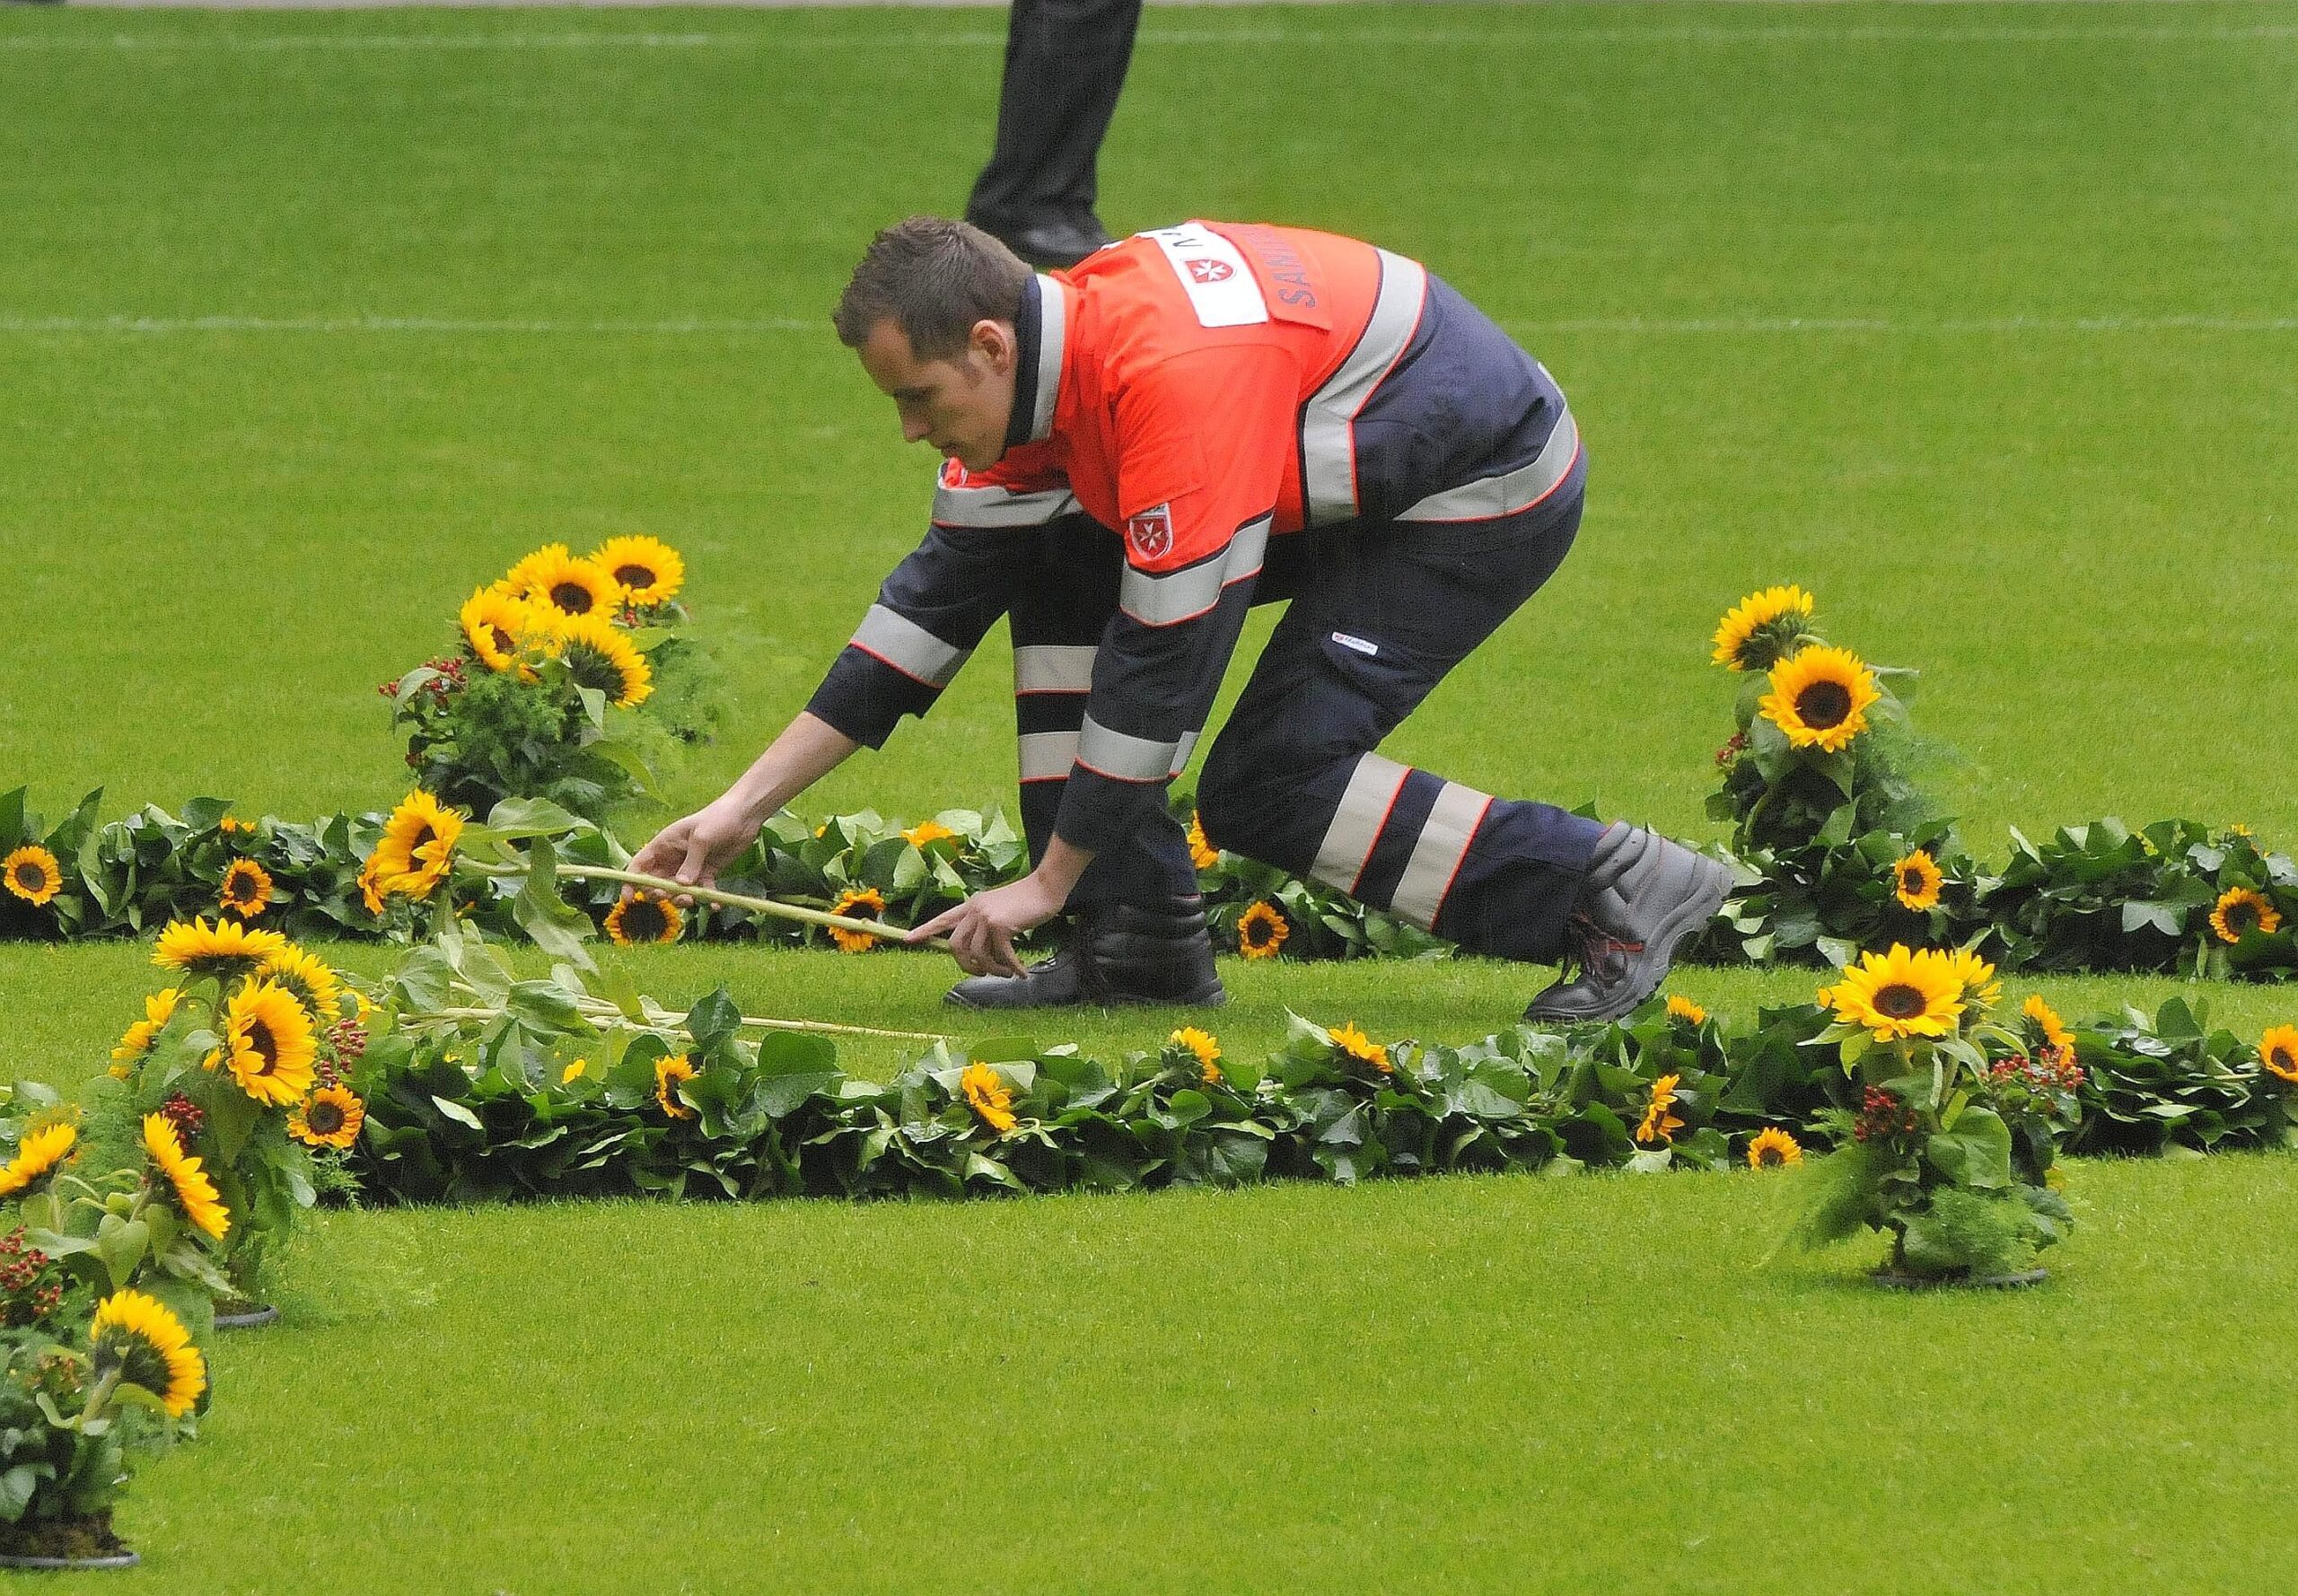 Helfer der Rettungsdienste legten in der MSV-Arena für jedes Todesopfer eine Sonneblume nieder. Foto: Kai Kitschenberg/WAZFotoPool